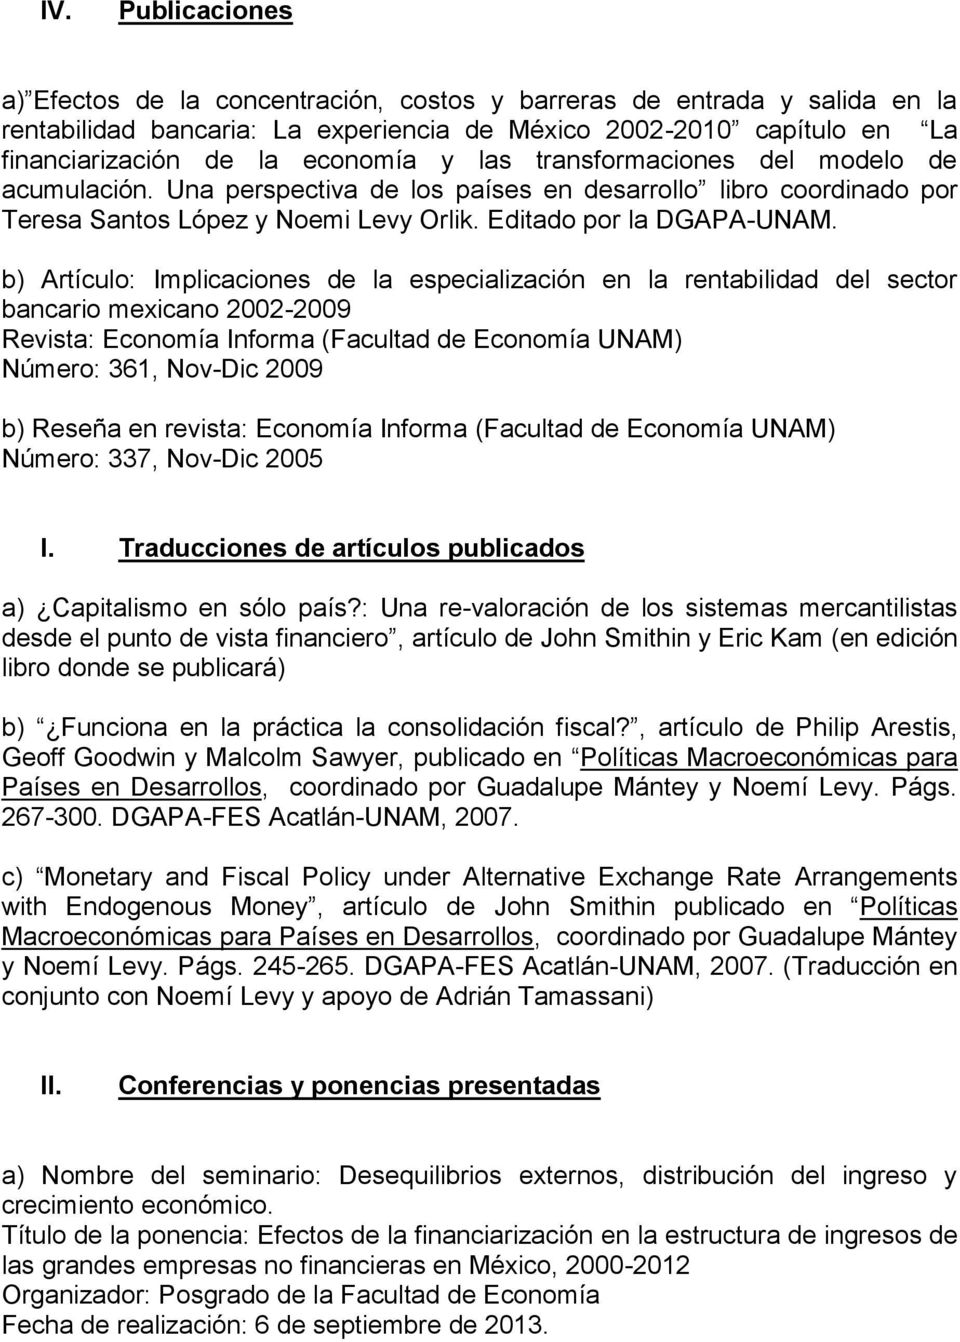 b) Artículo: Implicaciones de la especialización en la rentabilidad del sector bancario mexicano 2002-2009 Revista: Economía Informa (Facultad de Economía UNAM) Número: 361, Nov-Dic 2009 b) Reseña en